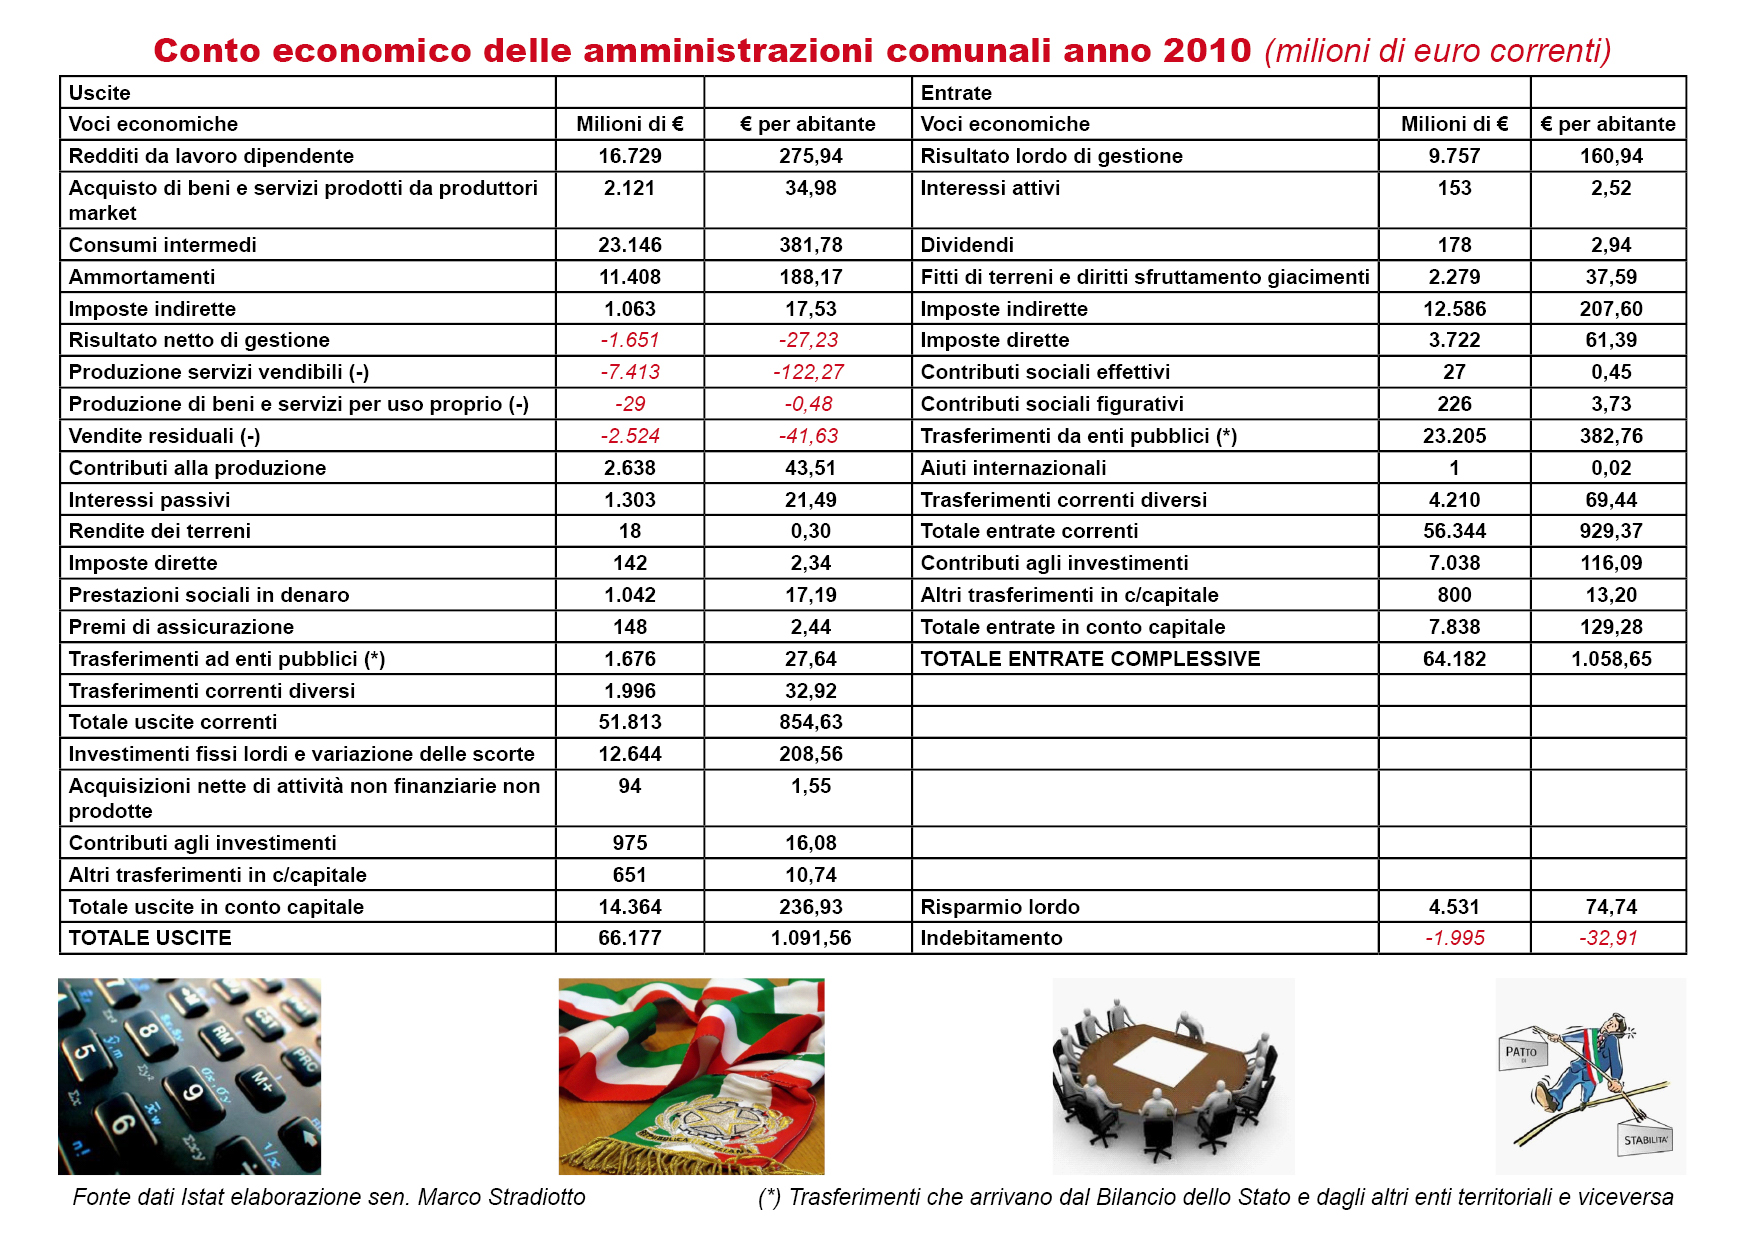 Quali sono state le entrate e le spese dei Comuni nel 2010?